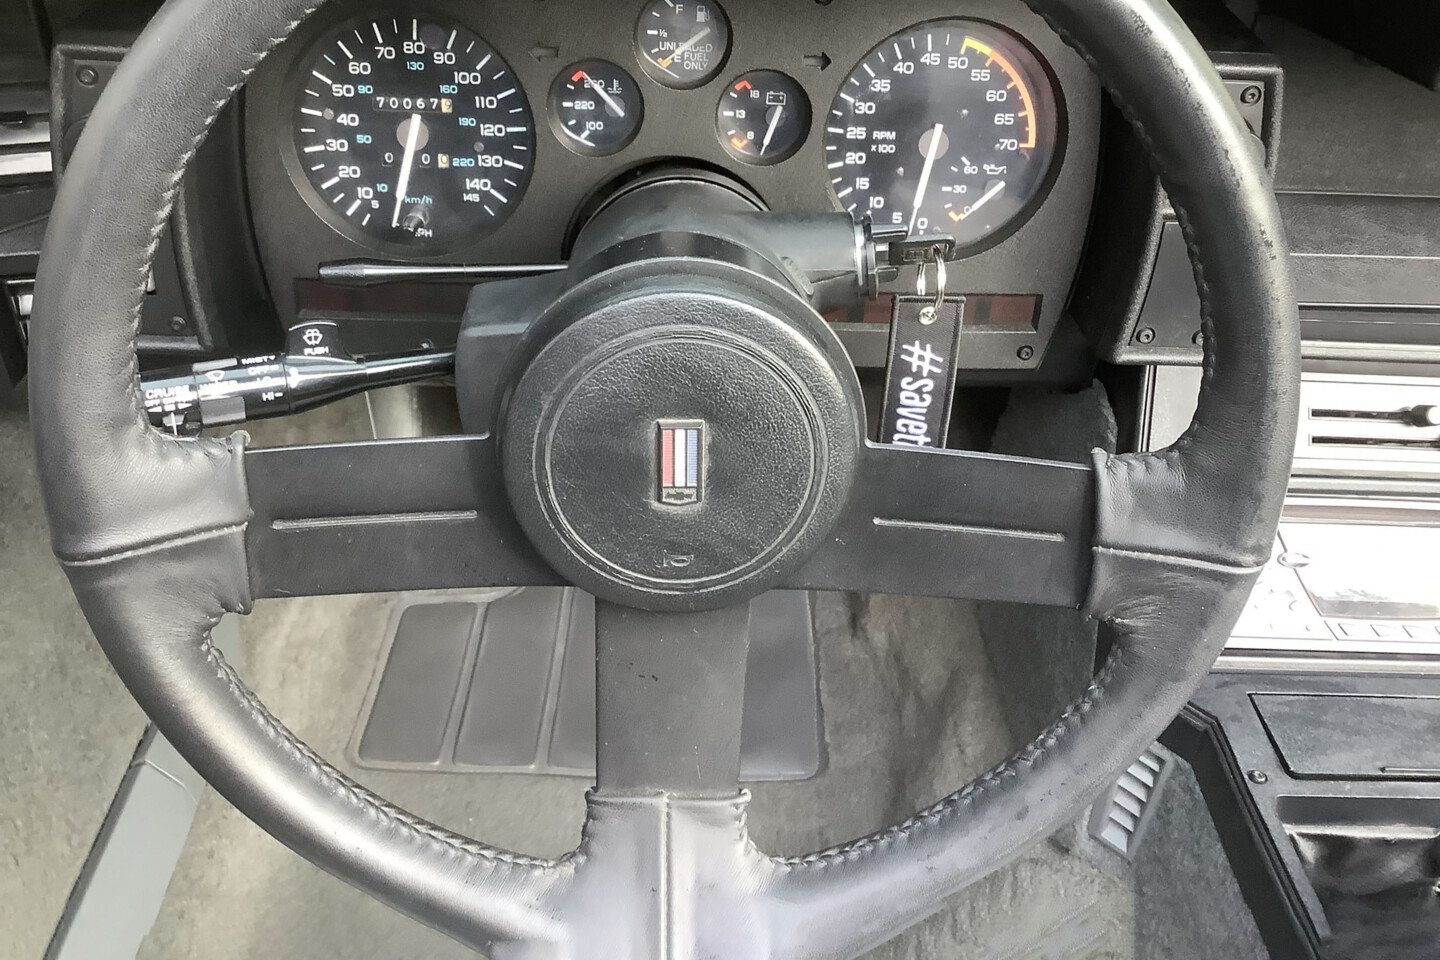 1989 IROC Camaro gauges